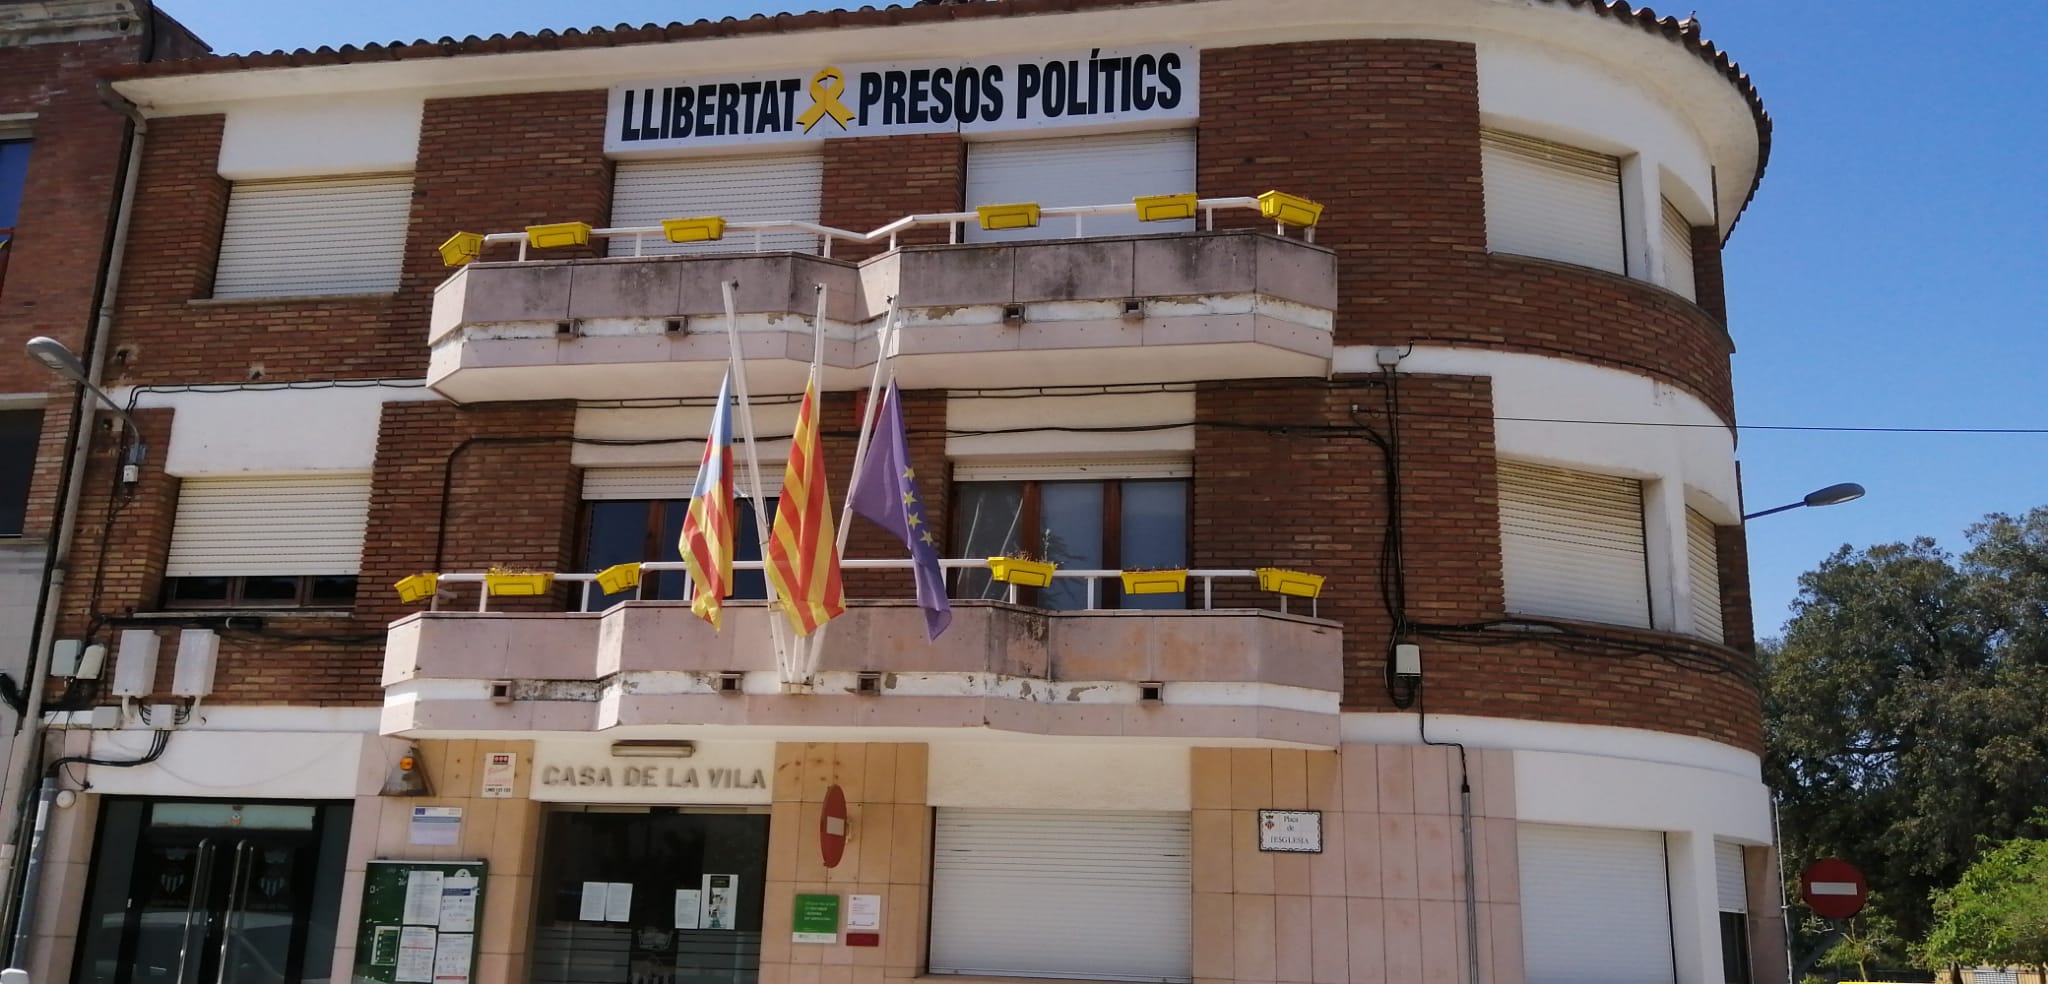 Les banderes a mig pal a l'Ajuntament de Vallromanes